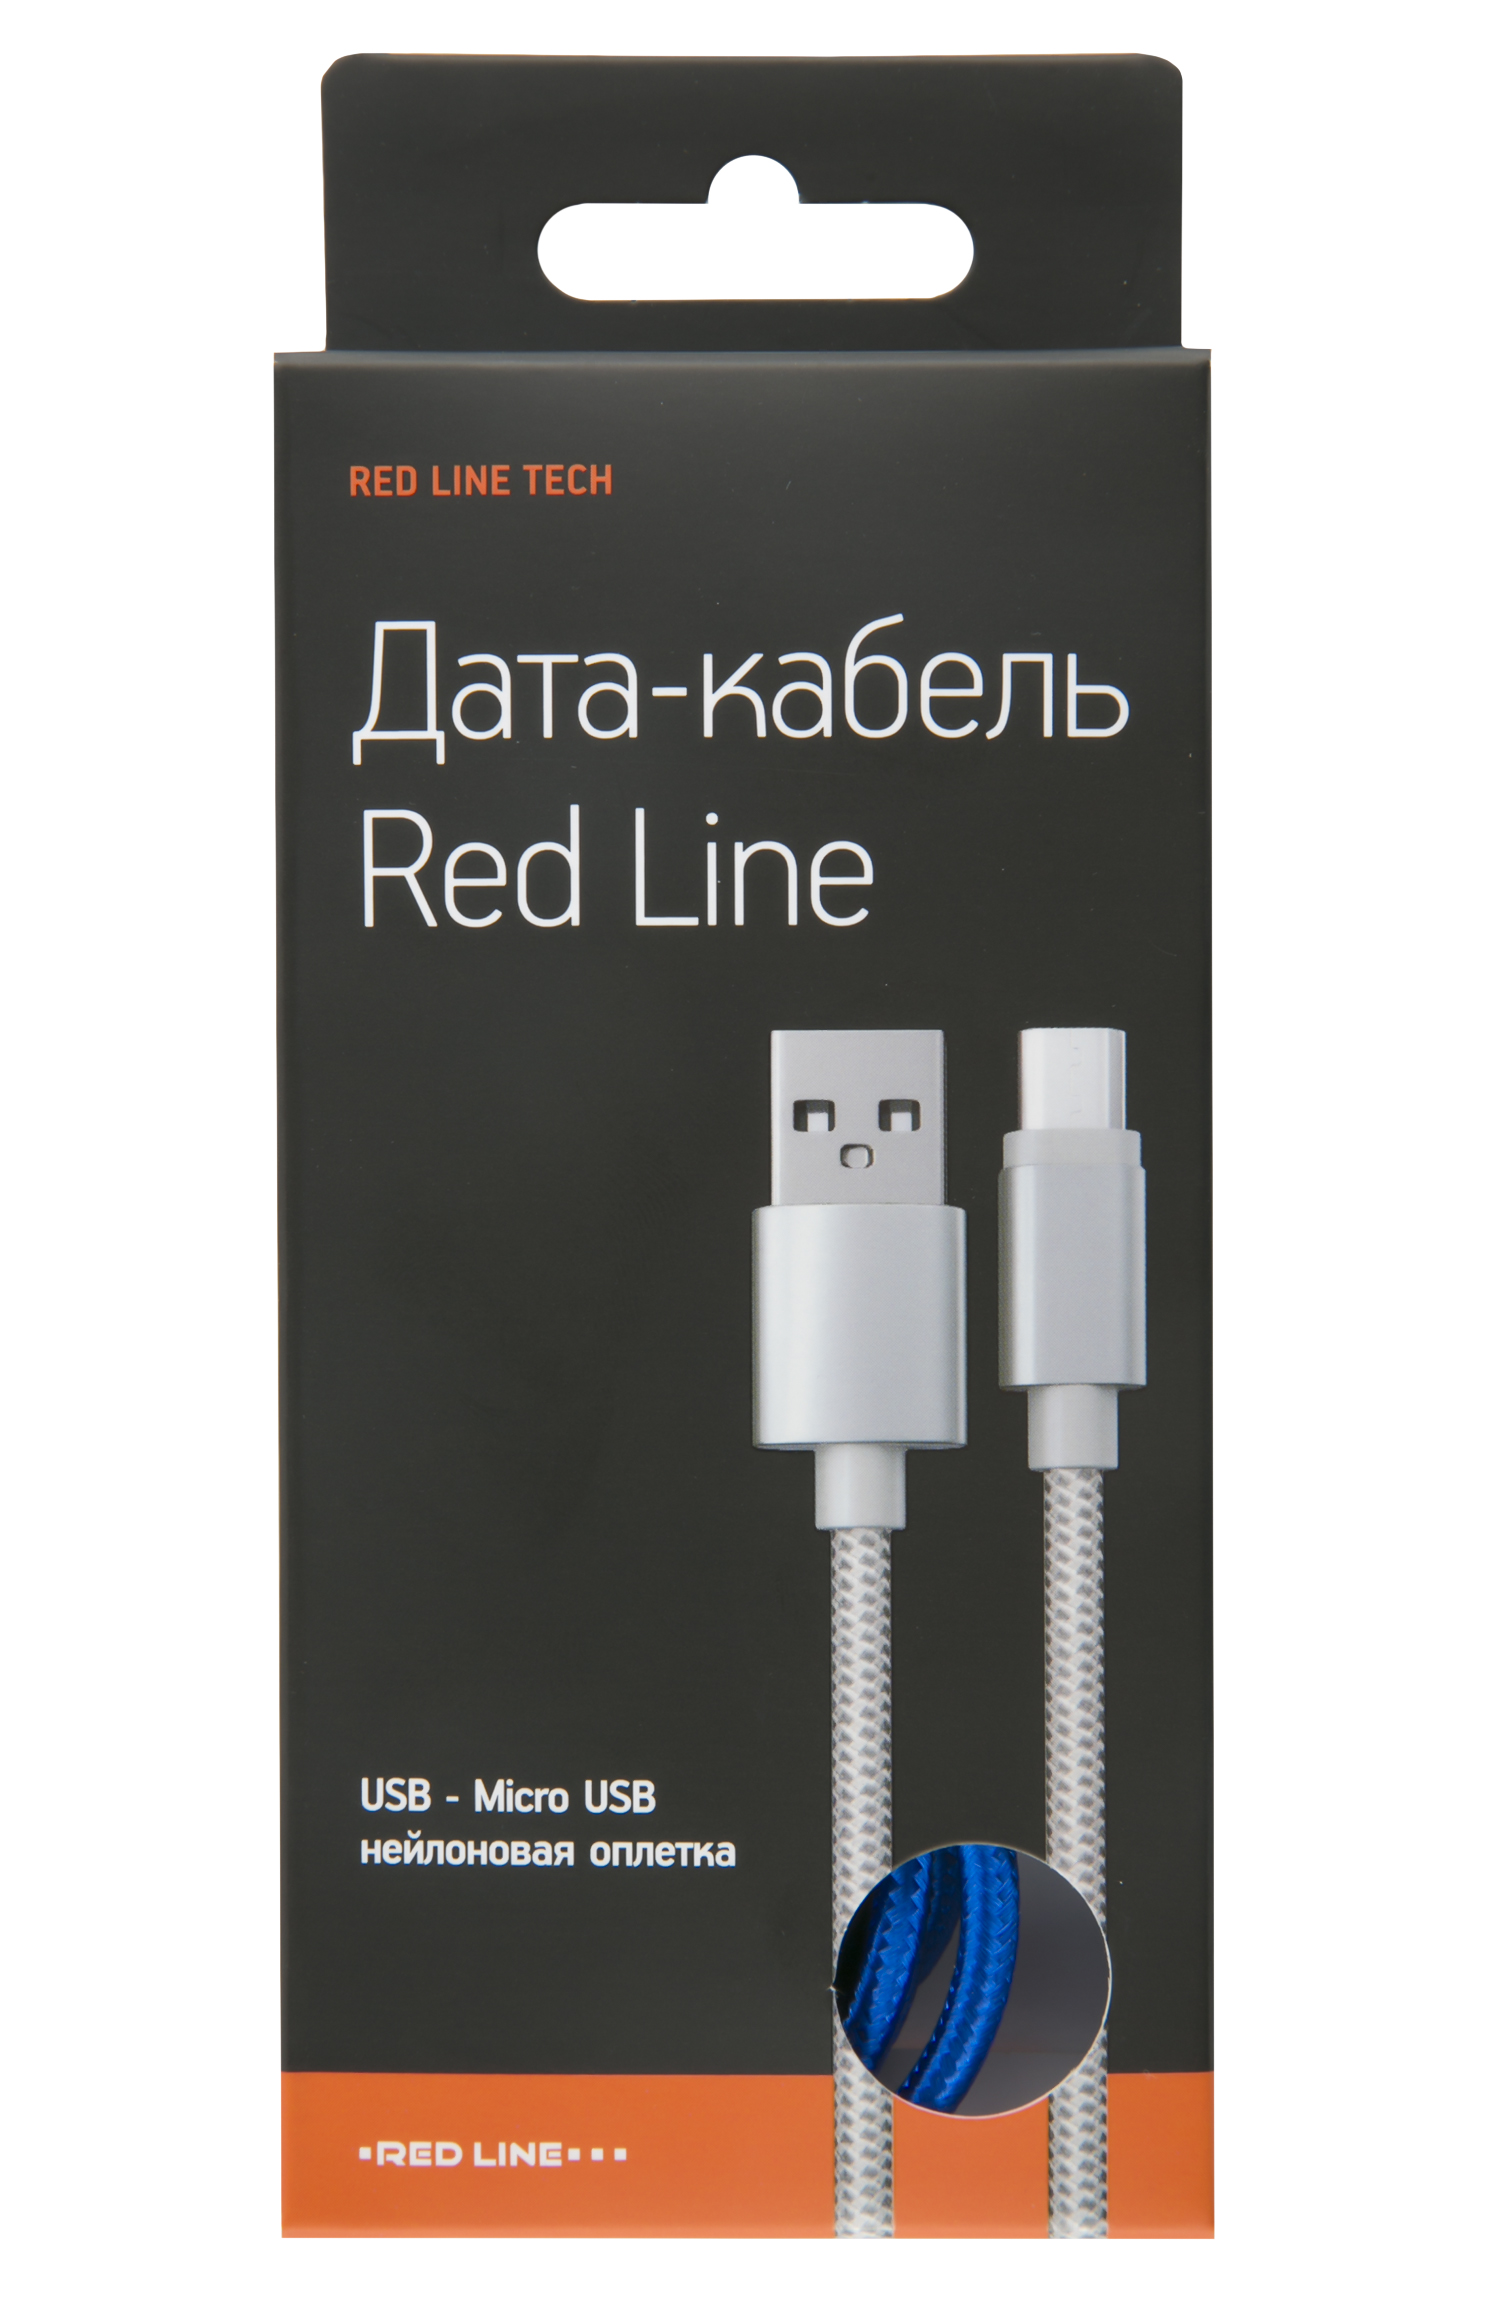 Дата-кабель Red Line USB - micro USB (2 метра) нейлоновая оплетка